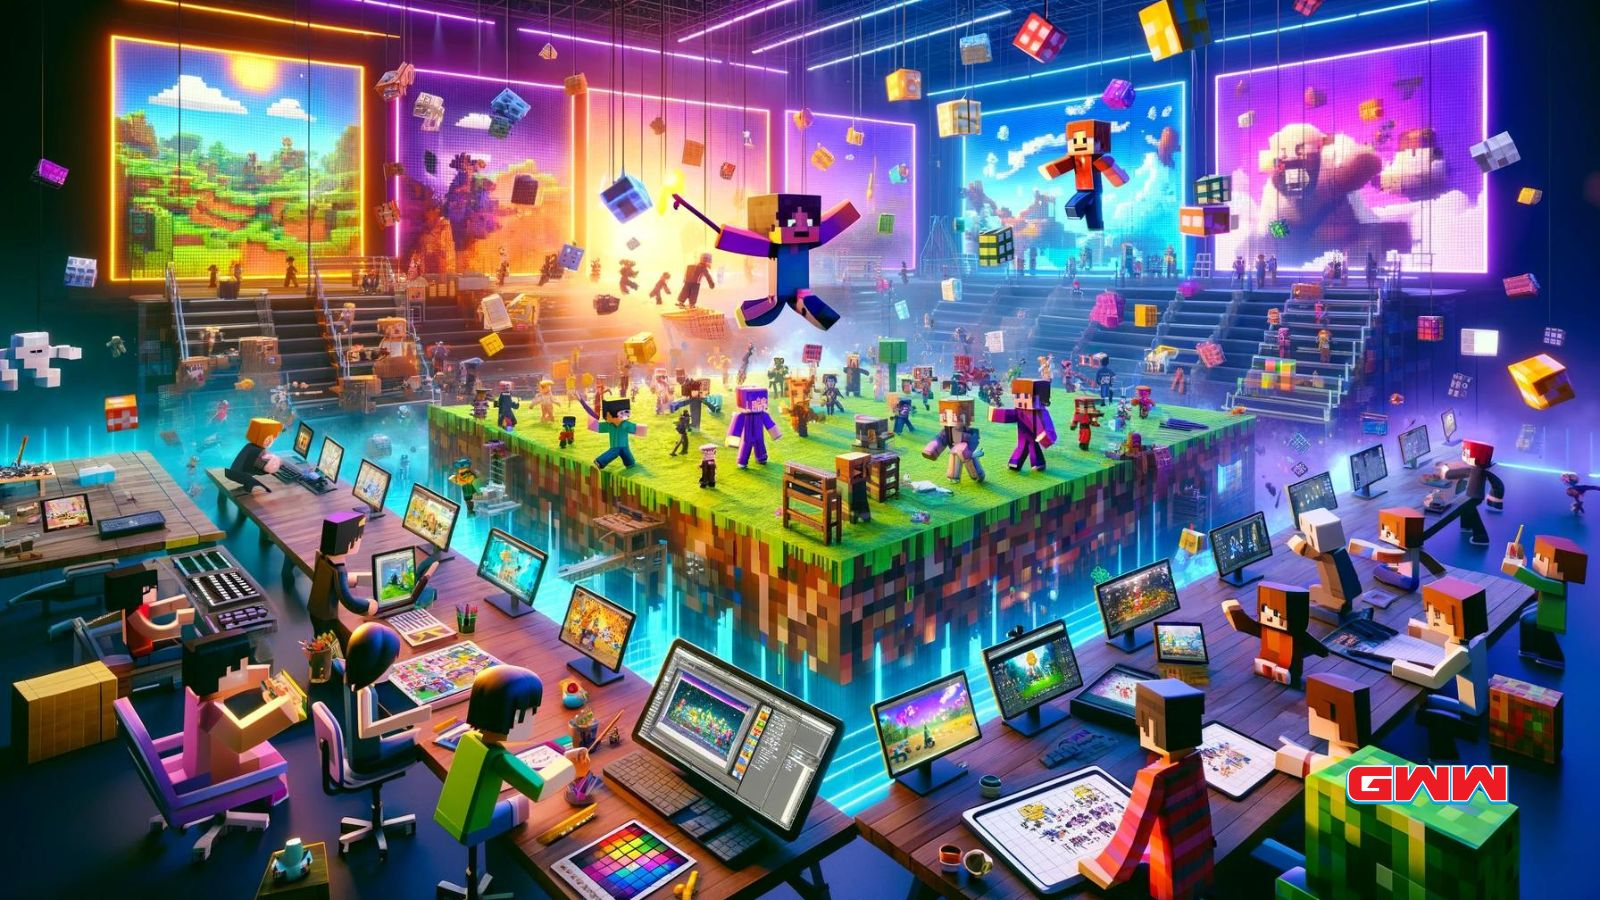 Una escena vibrante que muestra el proceso de creación de animación dentro de un mundo virtual inspirado en Minecraft.